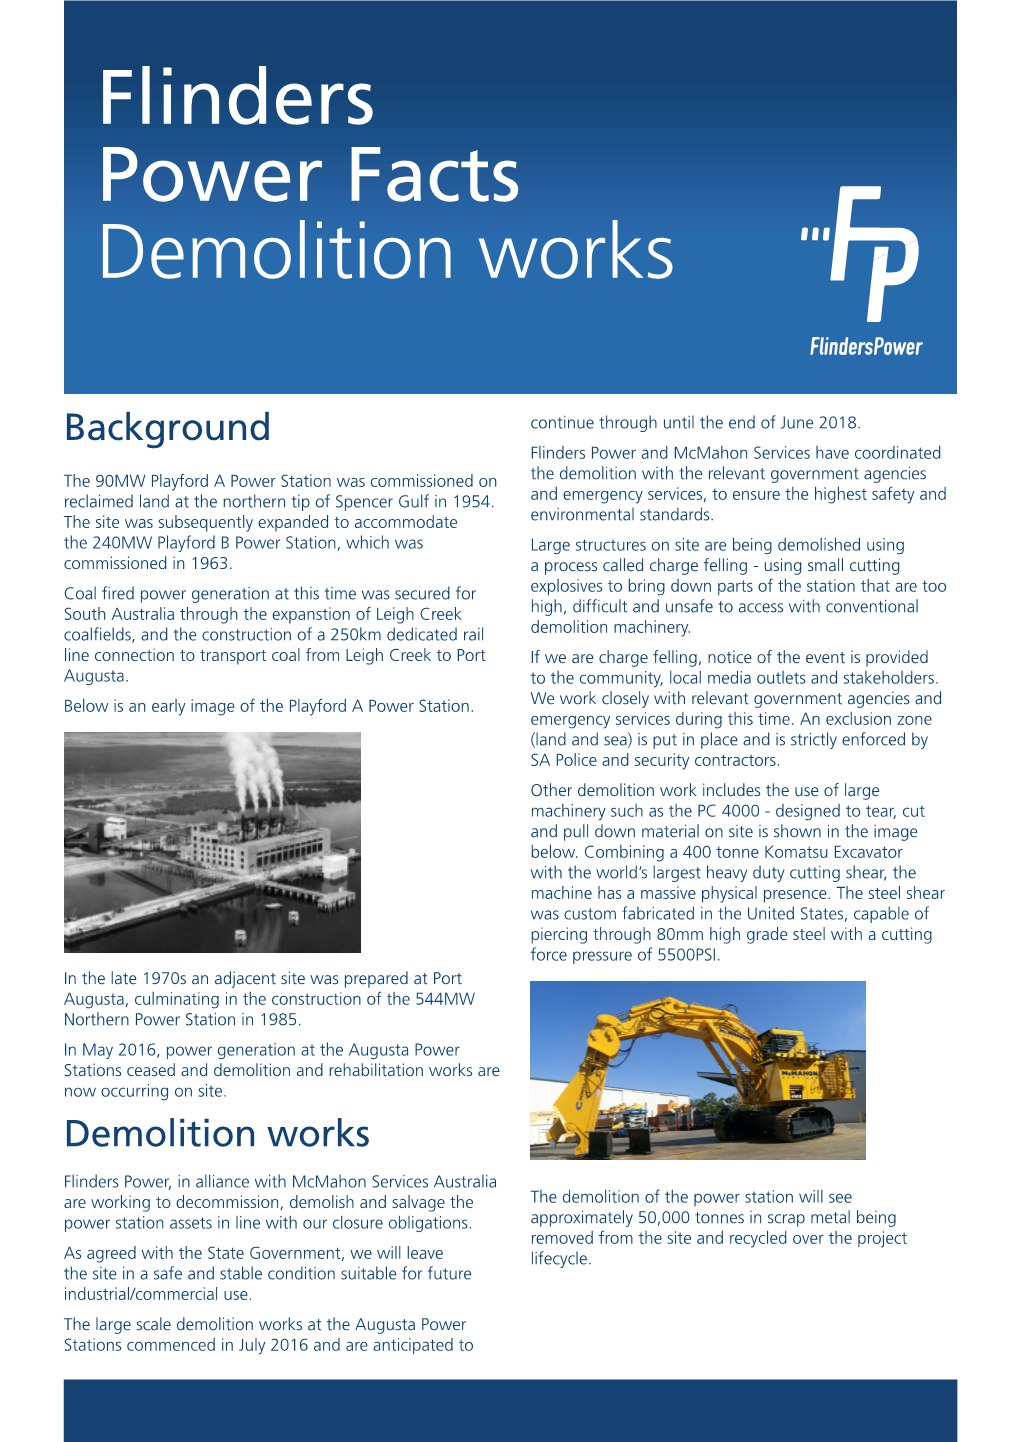 Flinders Power Facts Demolition Works